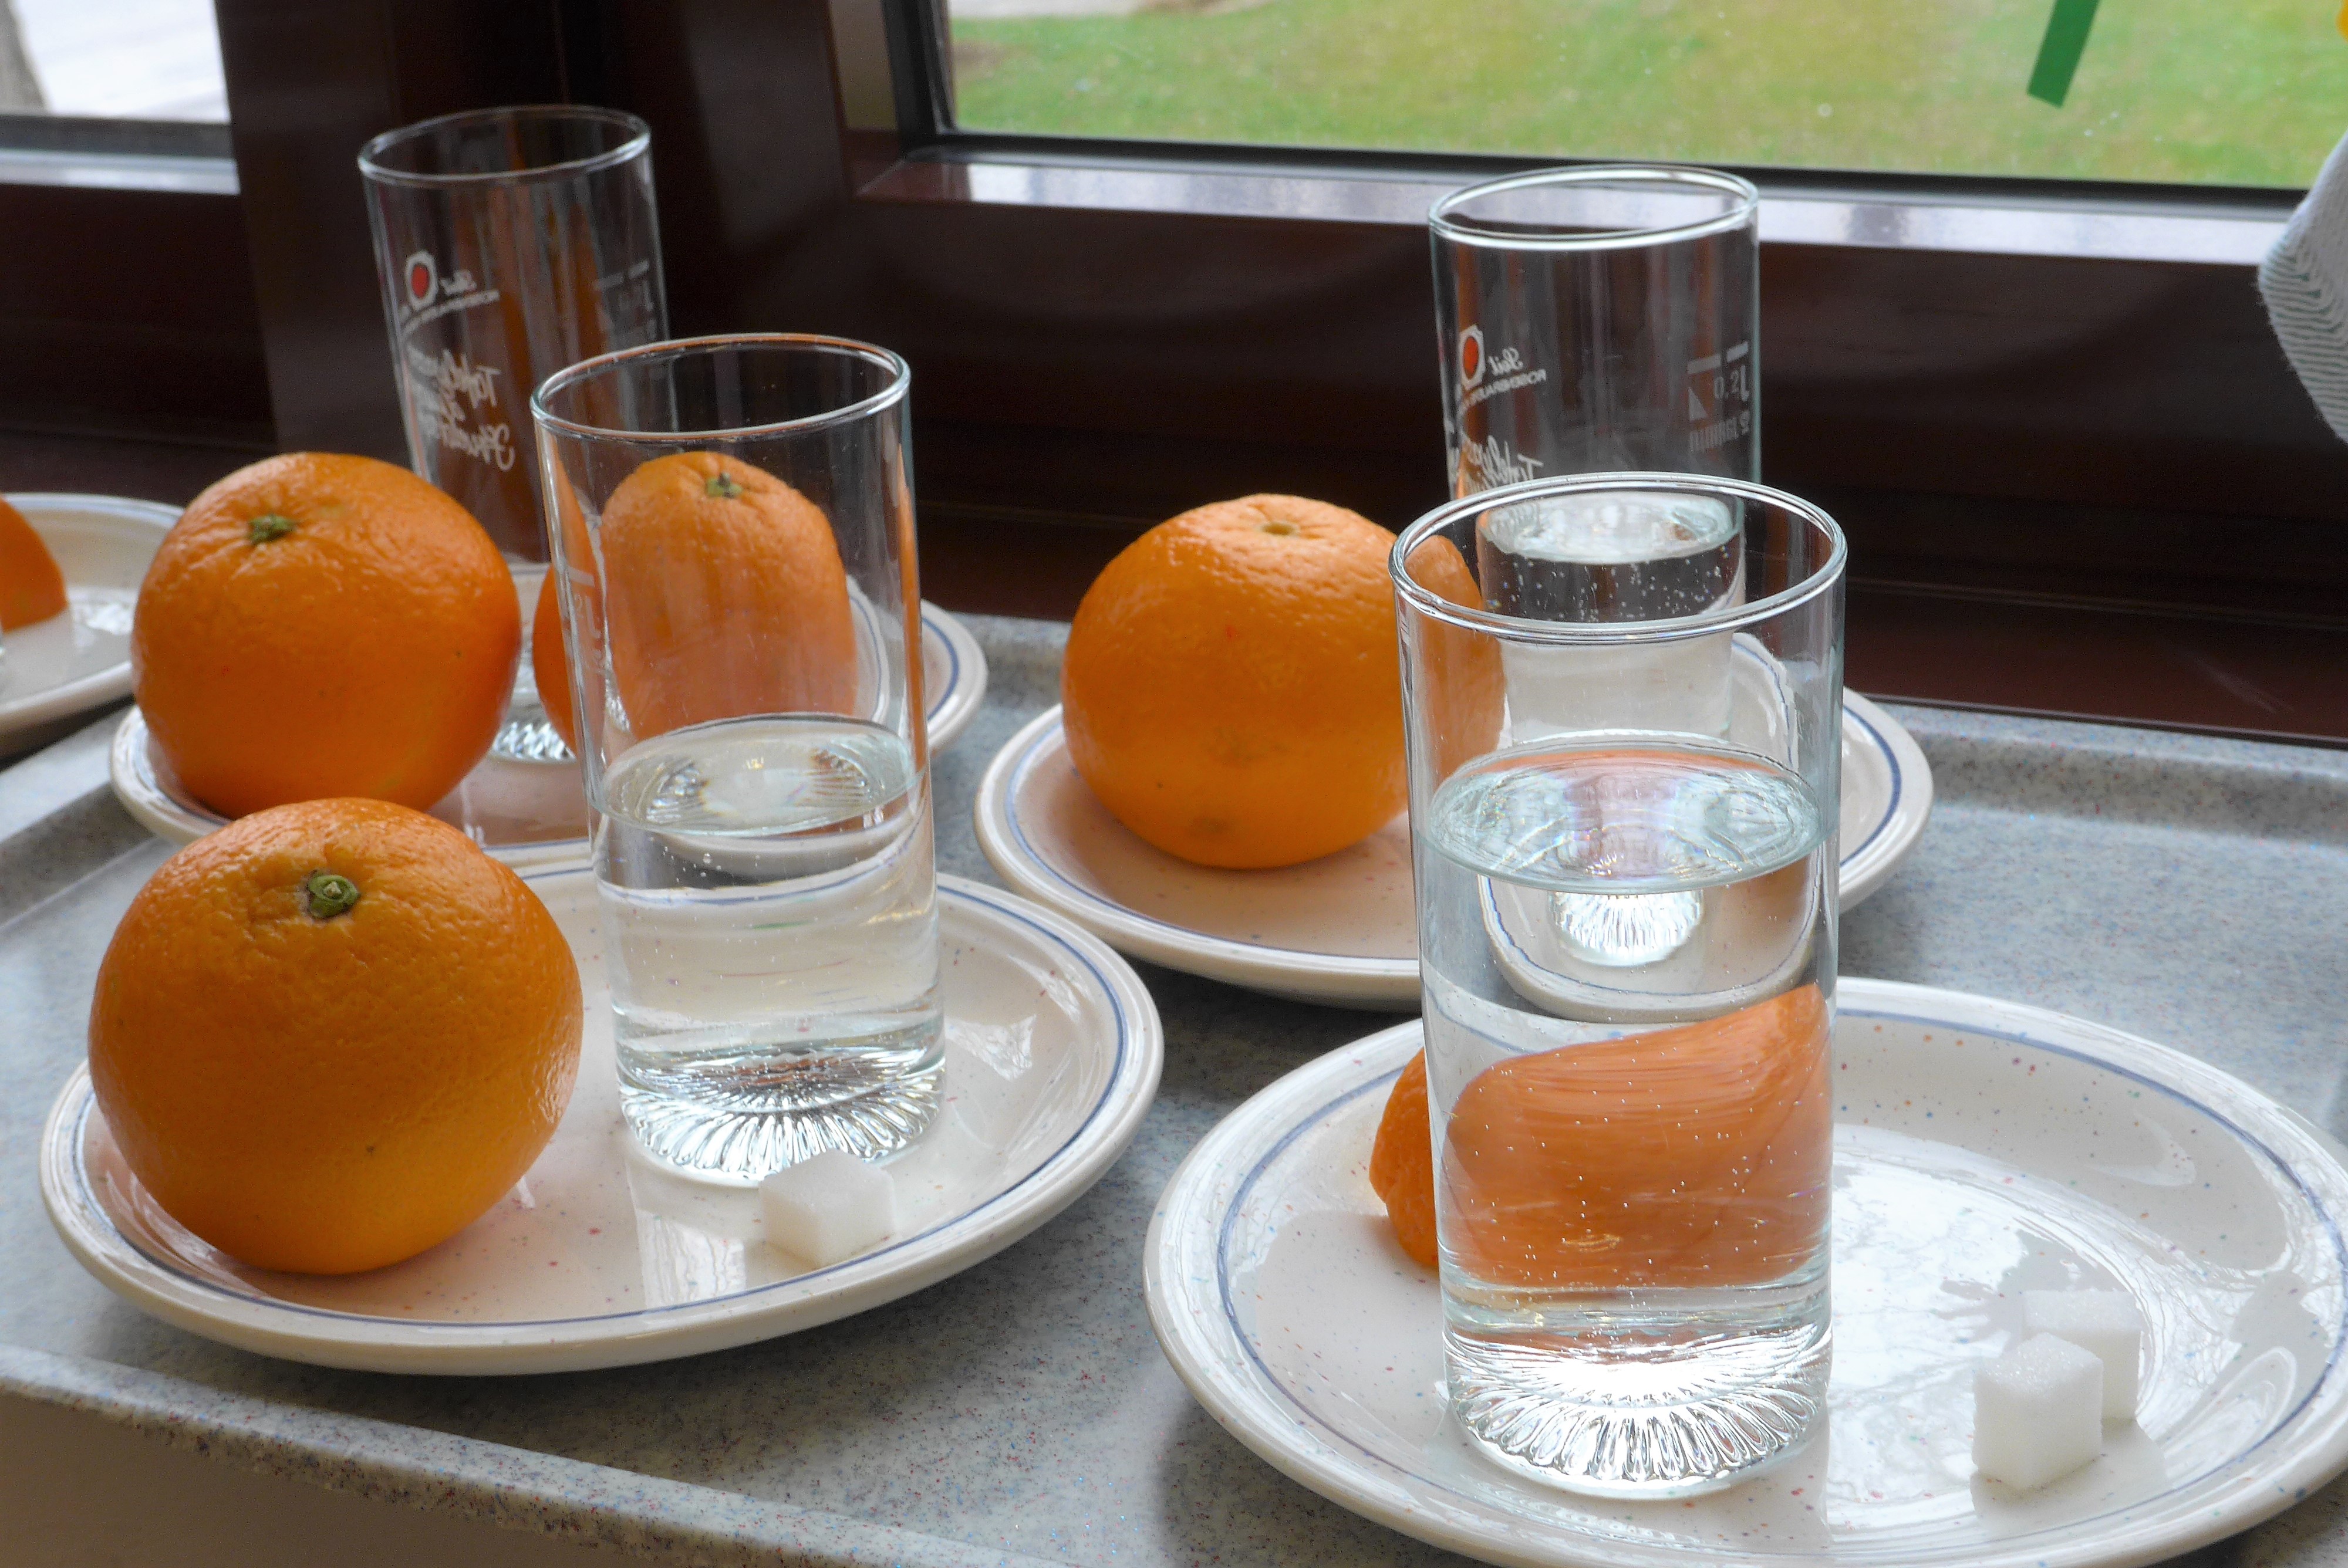 O-Saft-Tasting: Wir testeten und bewerteten Sensorik, Geruch und Geschmack verschiedener Orangengetränke.